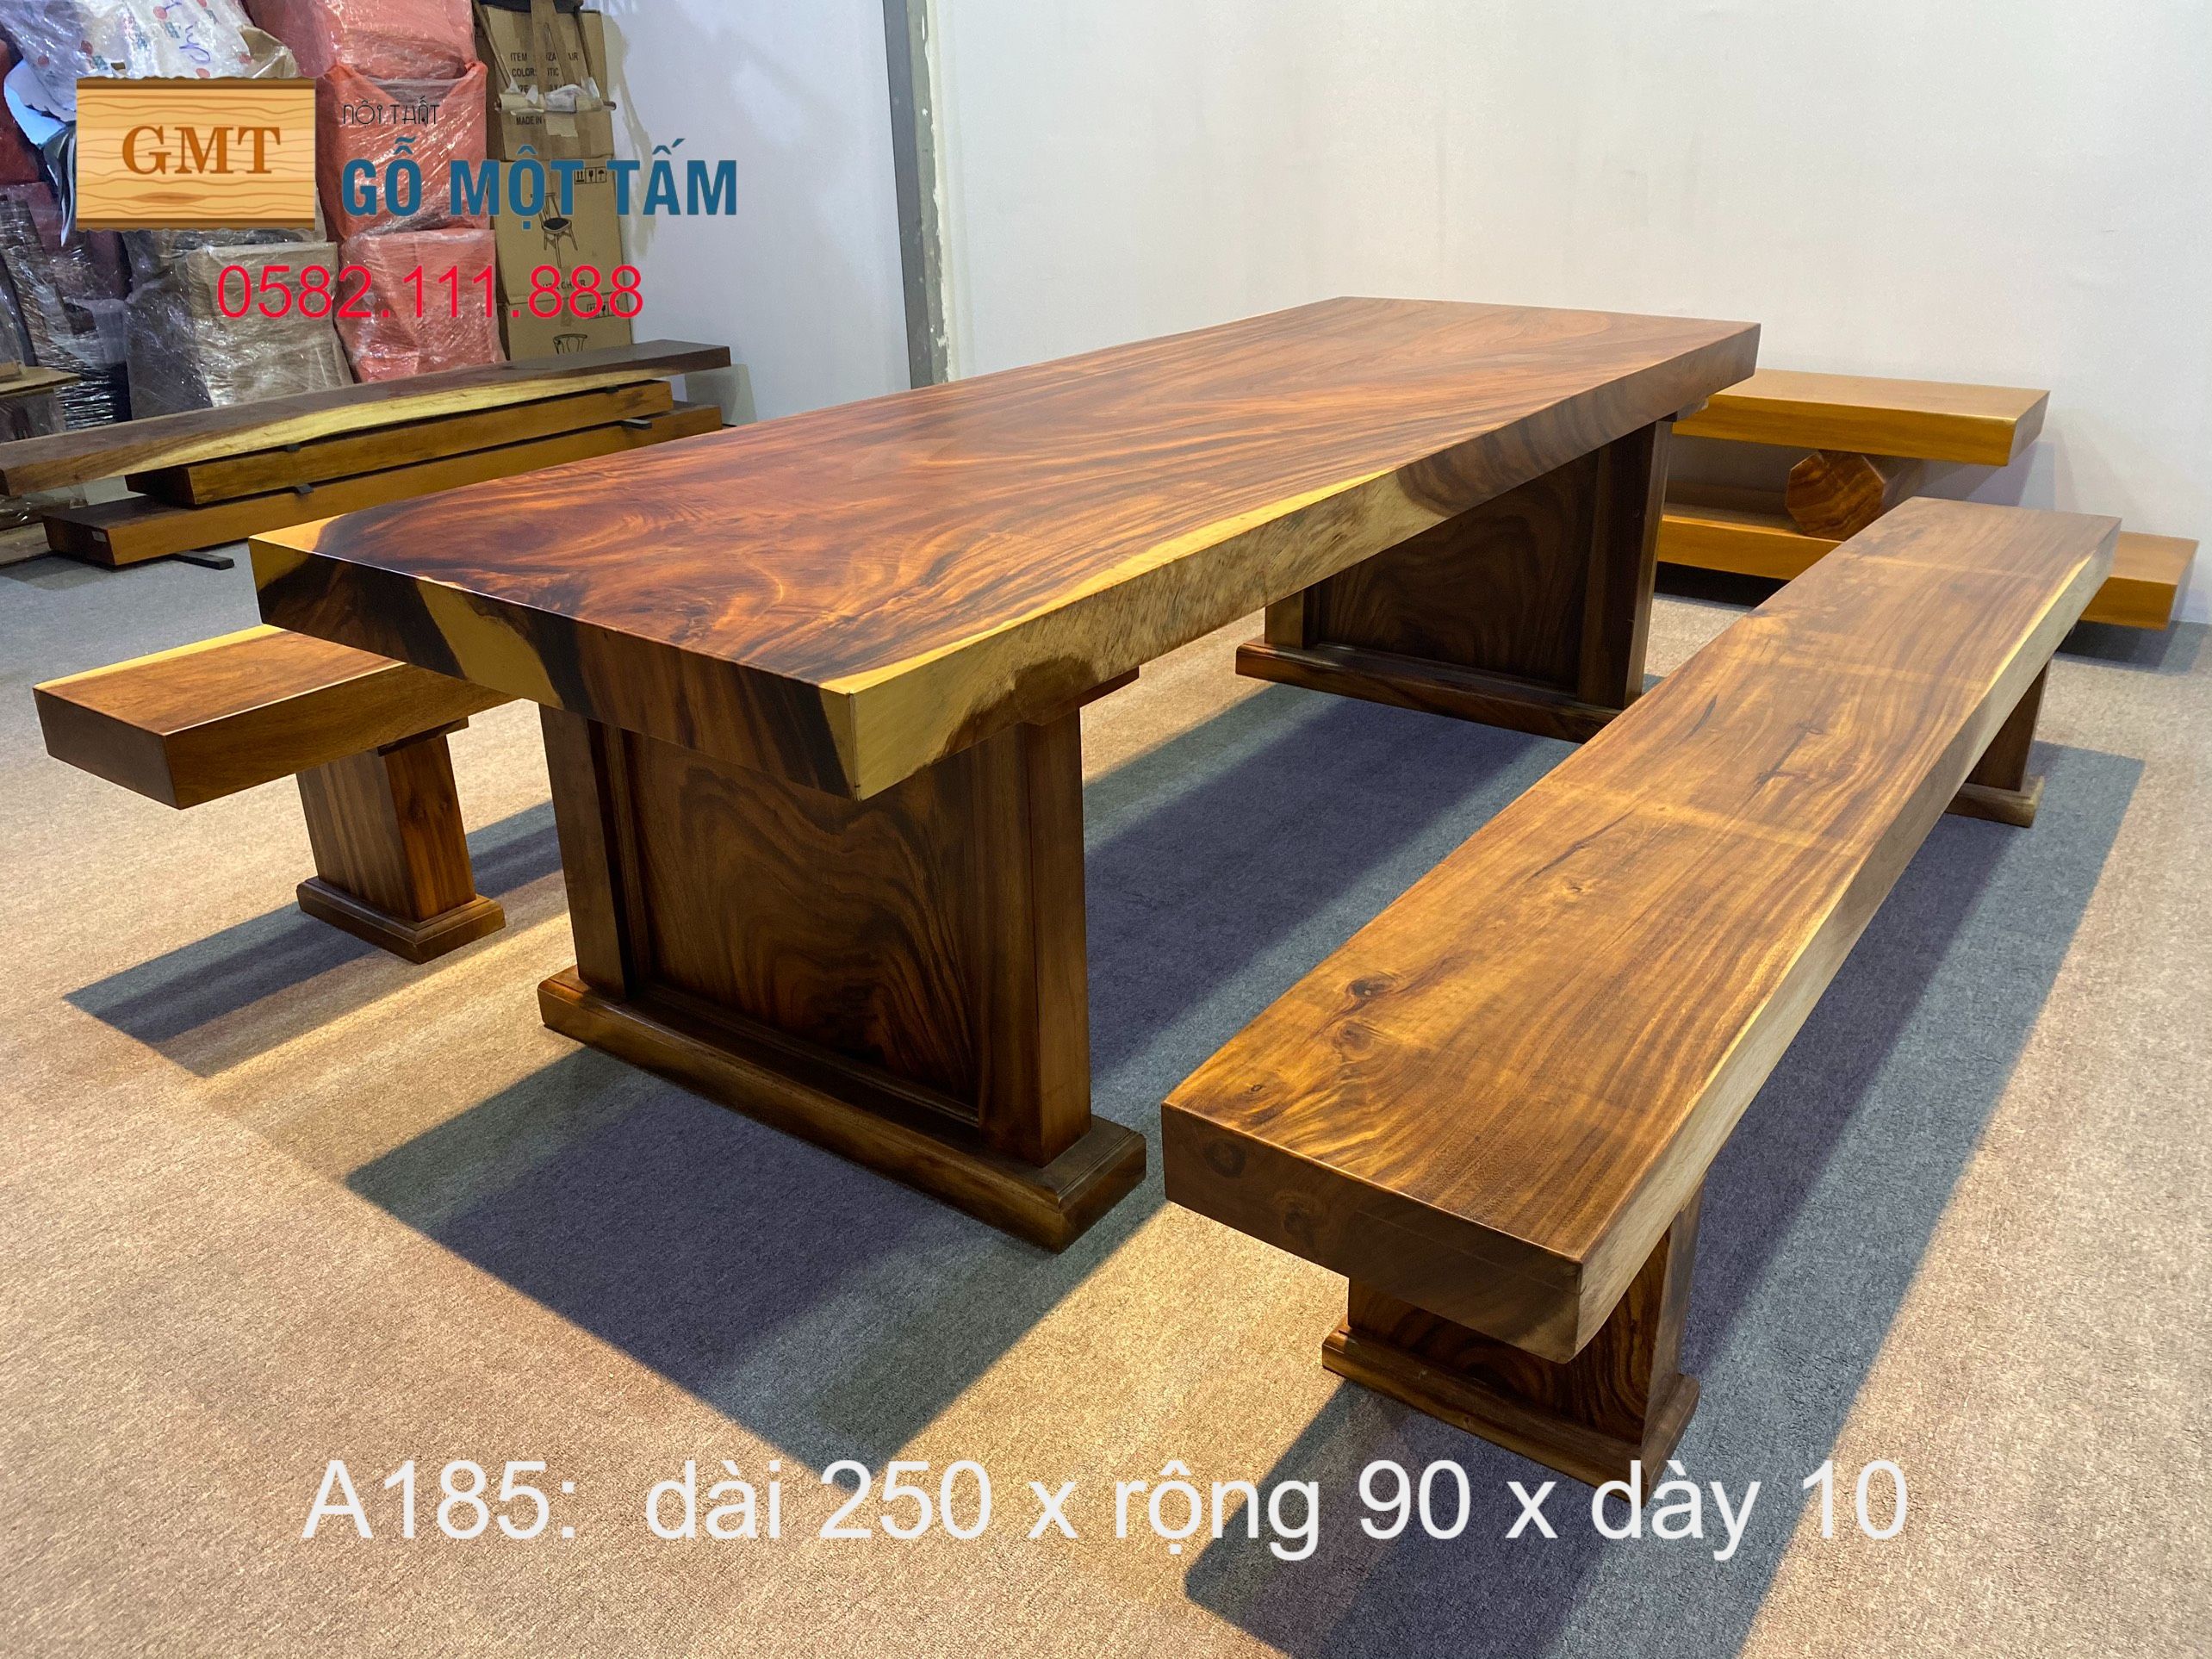 3 Chuyên cung cấp bàn ghế gỗ me tây nguyên tấm giá tại xưởng không qua trung gian